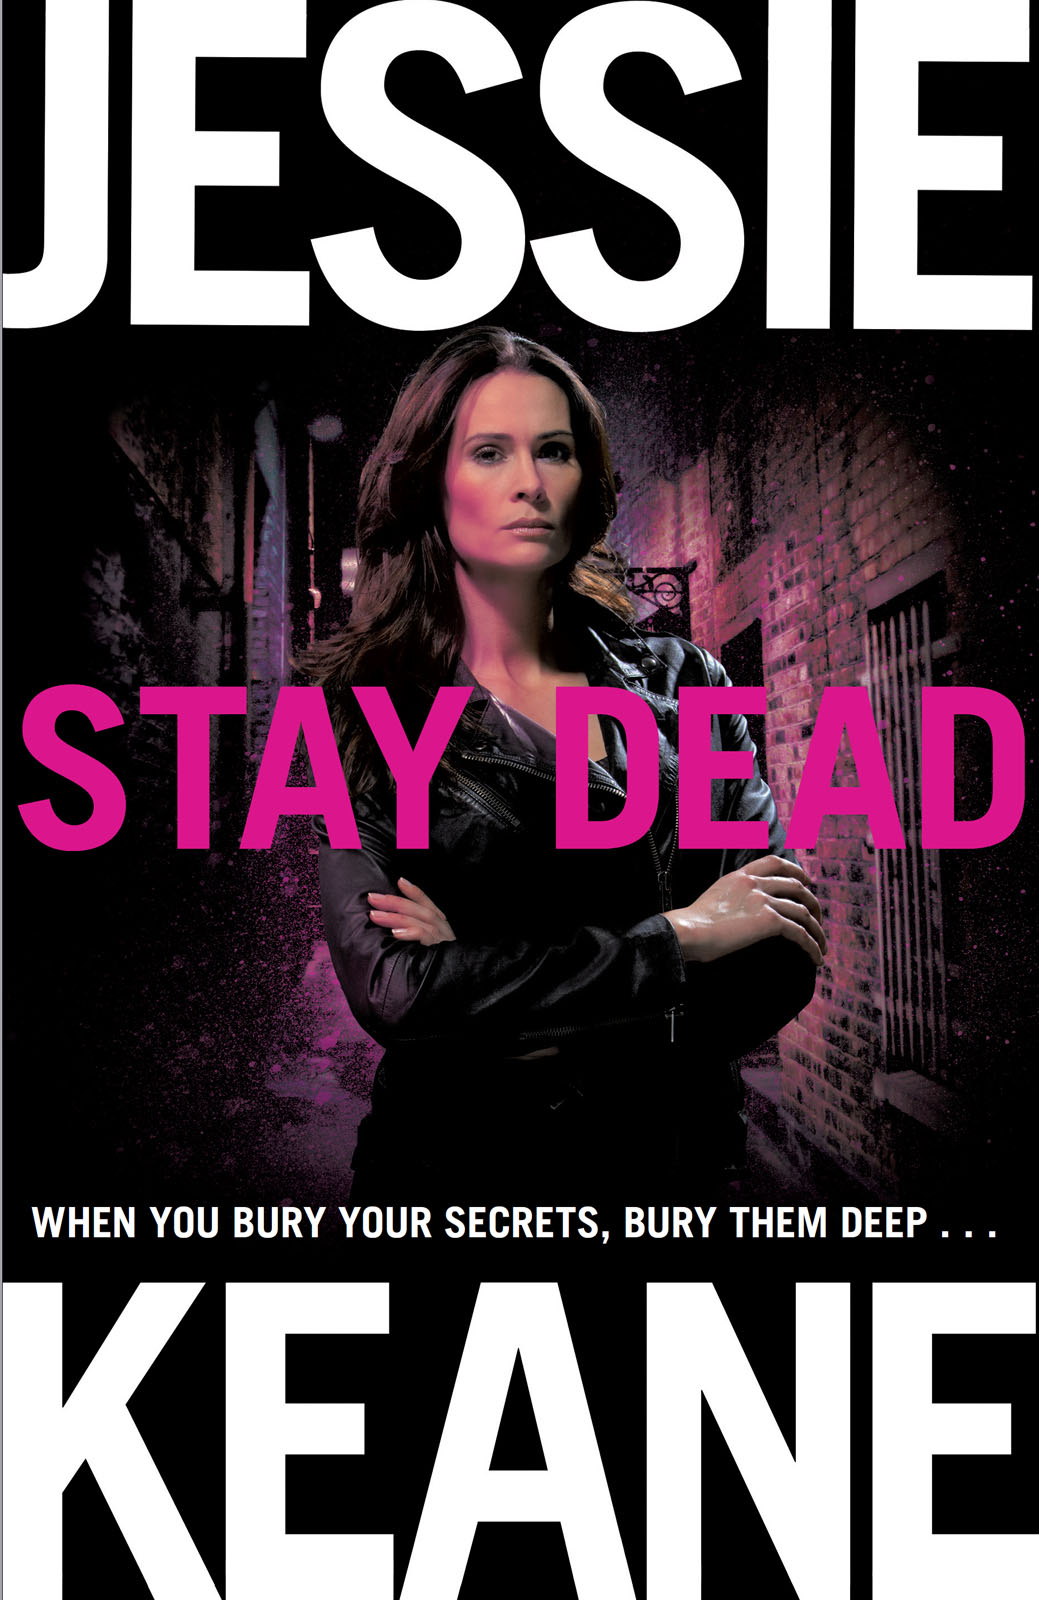 Stay Dead by Jessie Keane